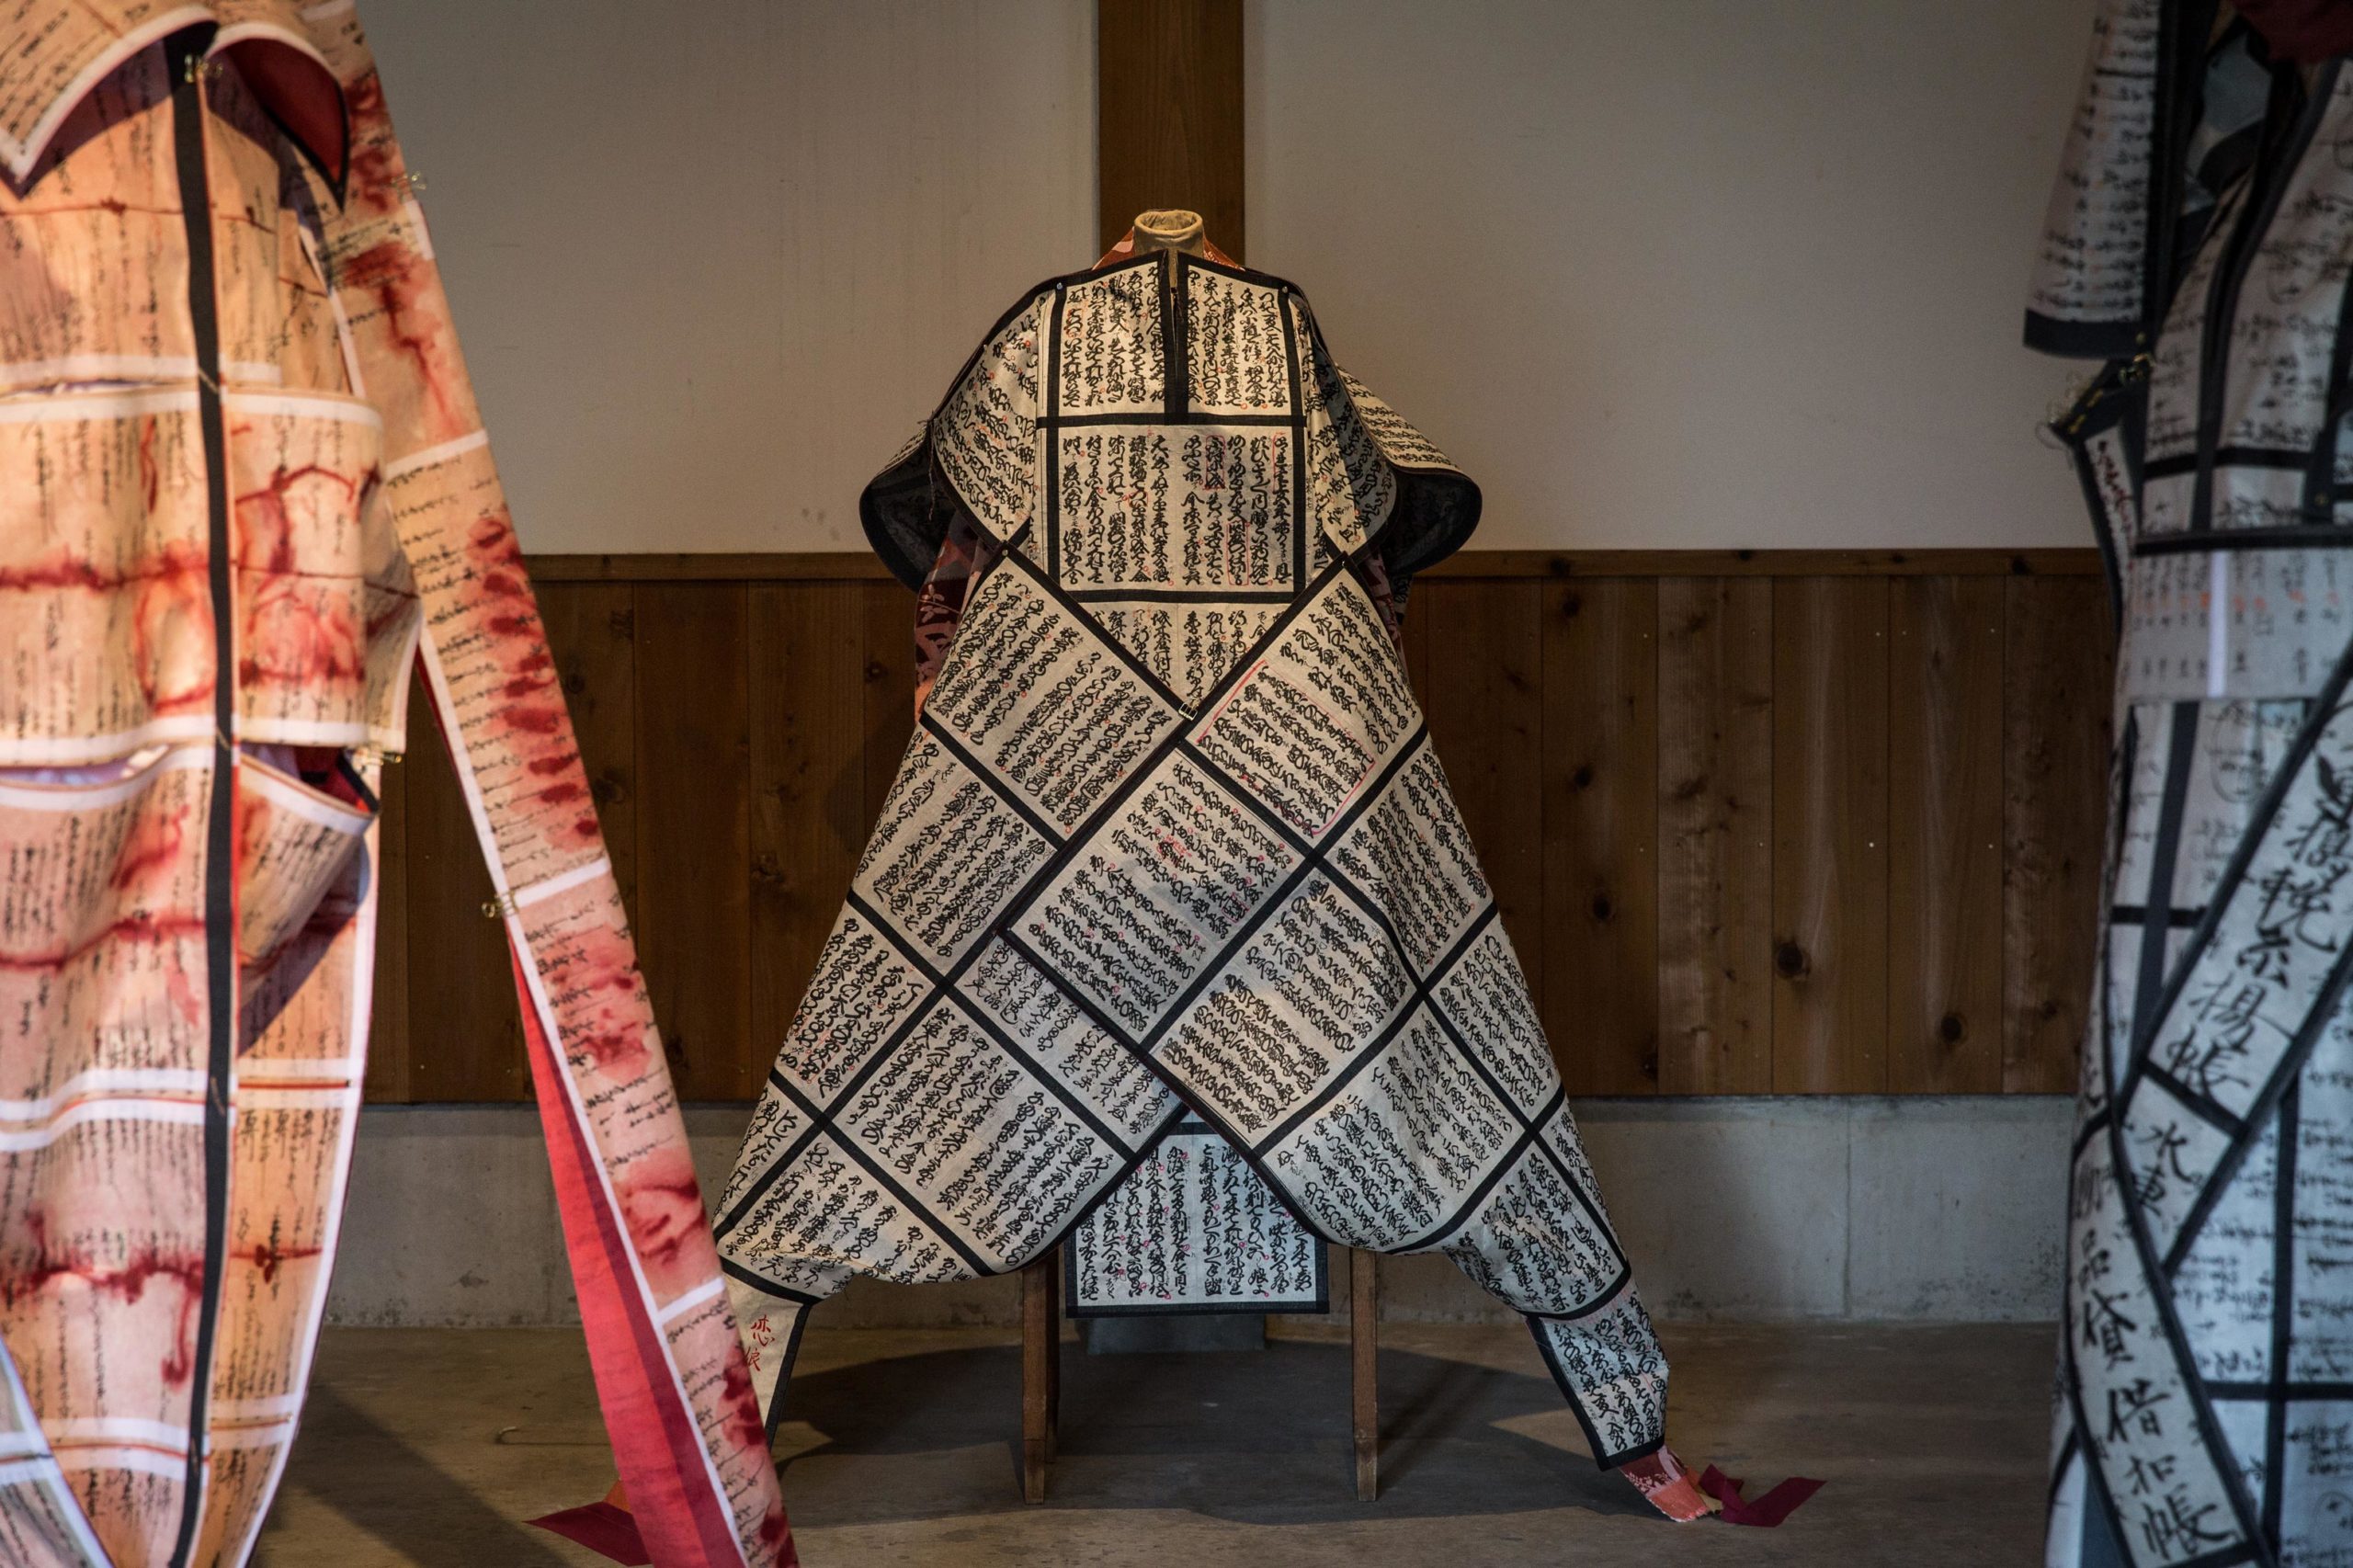 Anita Gratzer Washi paper clothing art installation in Japan